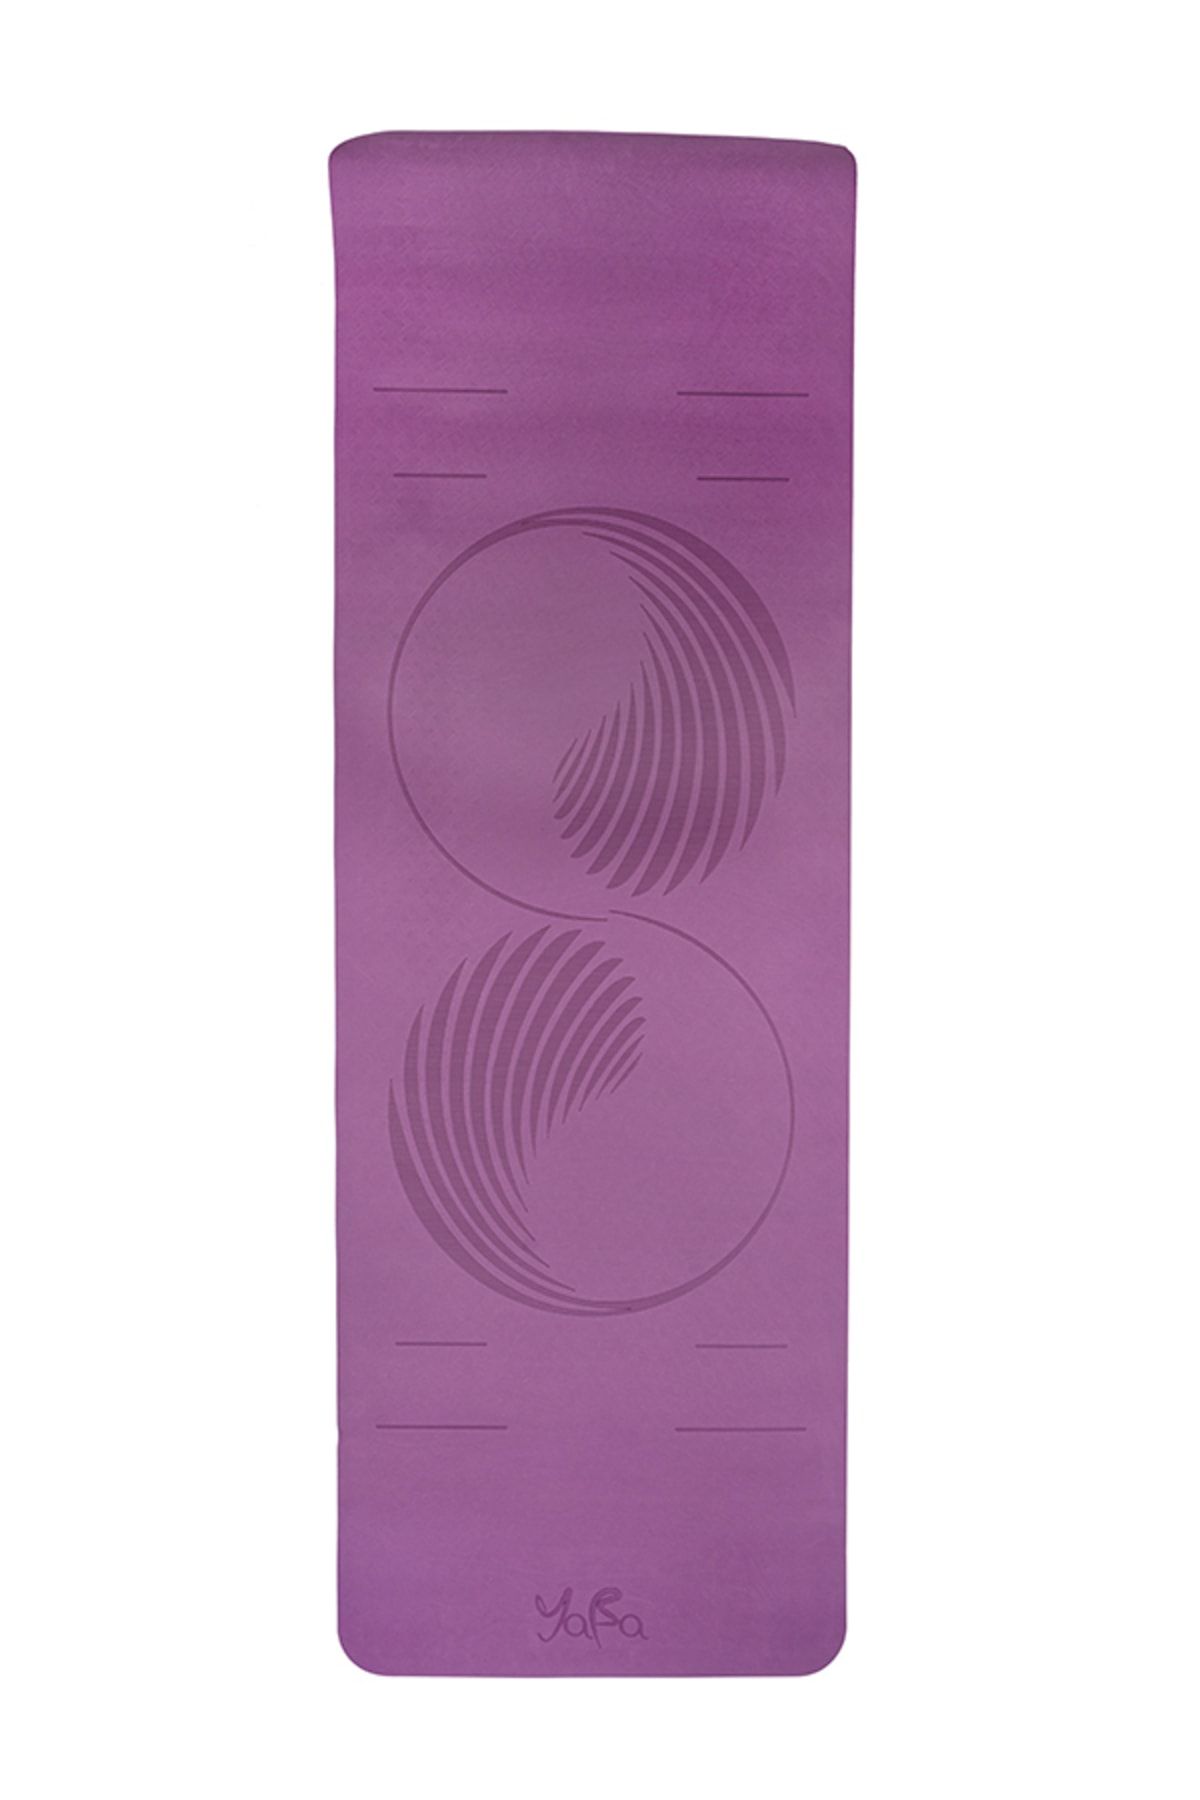 YABA Tpe Yoga Matı 6mm Pilates Matı Yin Yang 183*61*0.6cm